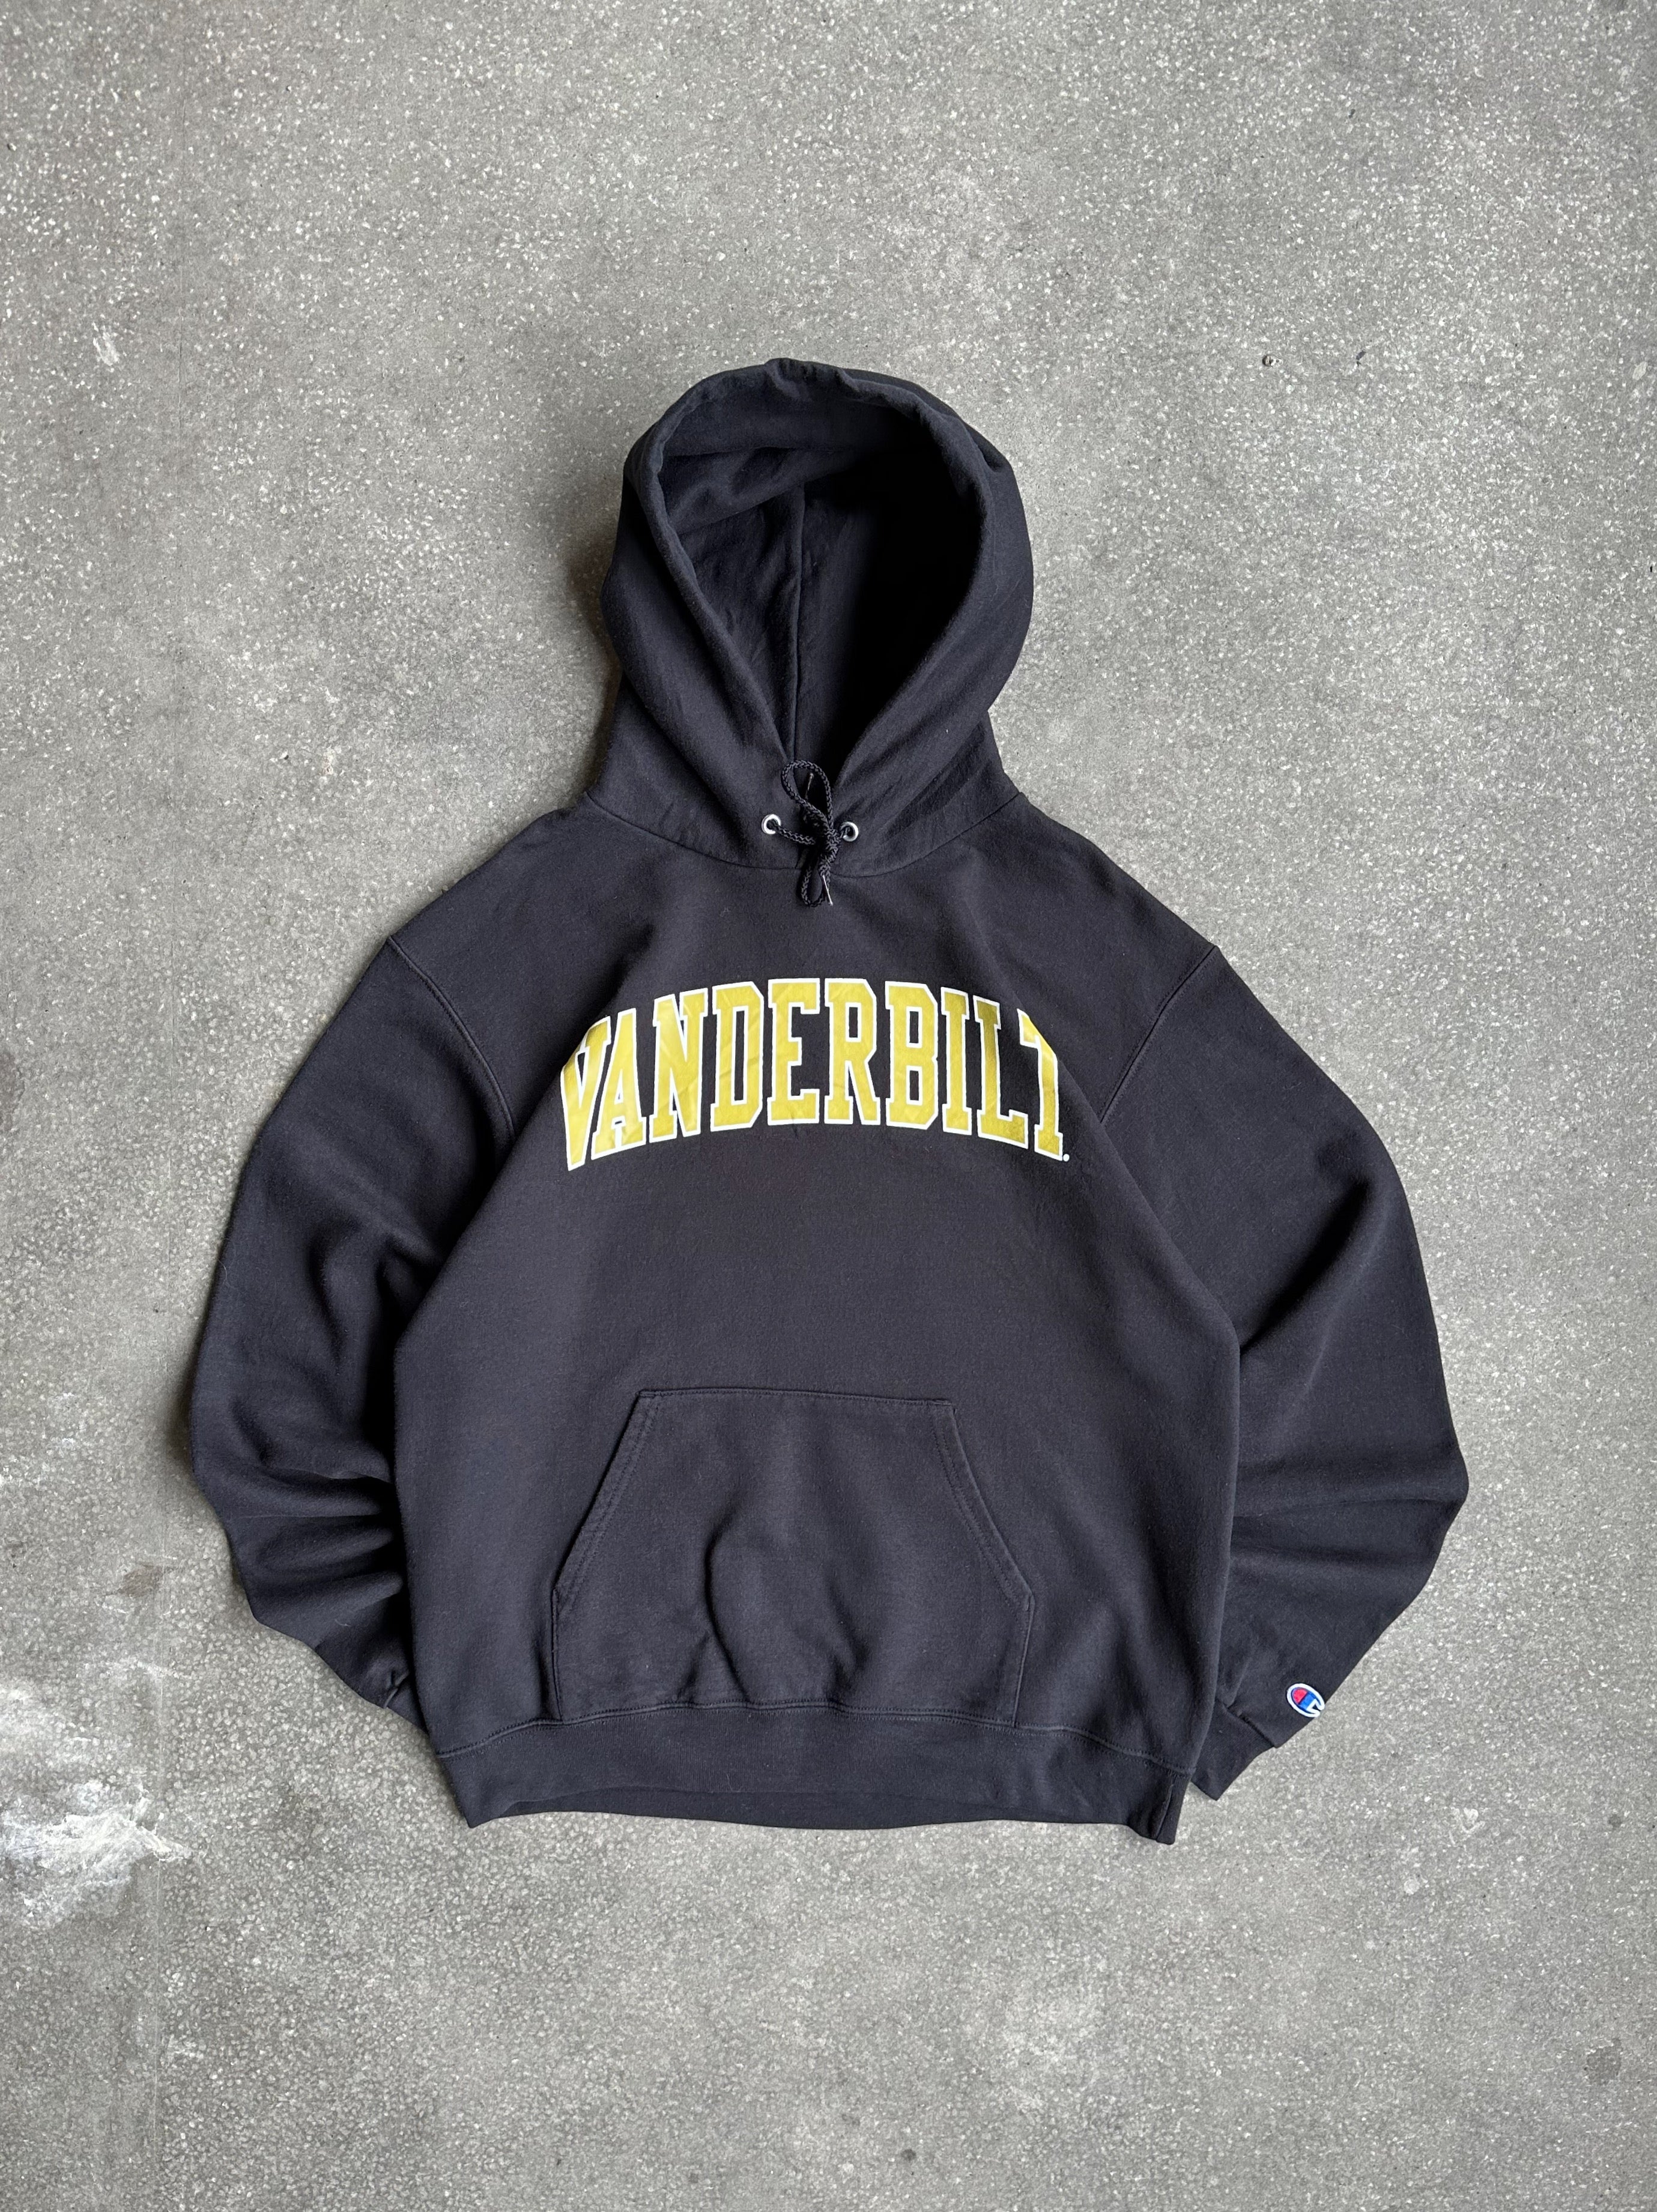 Vintage Champion Vanderbilt University Hoodie - Medium